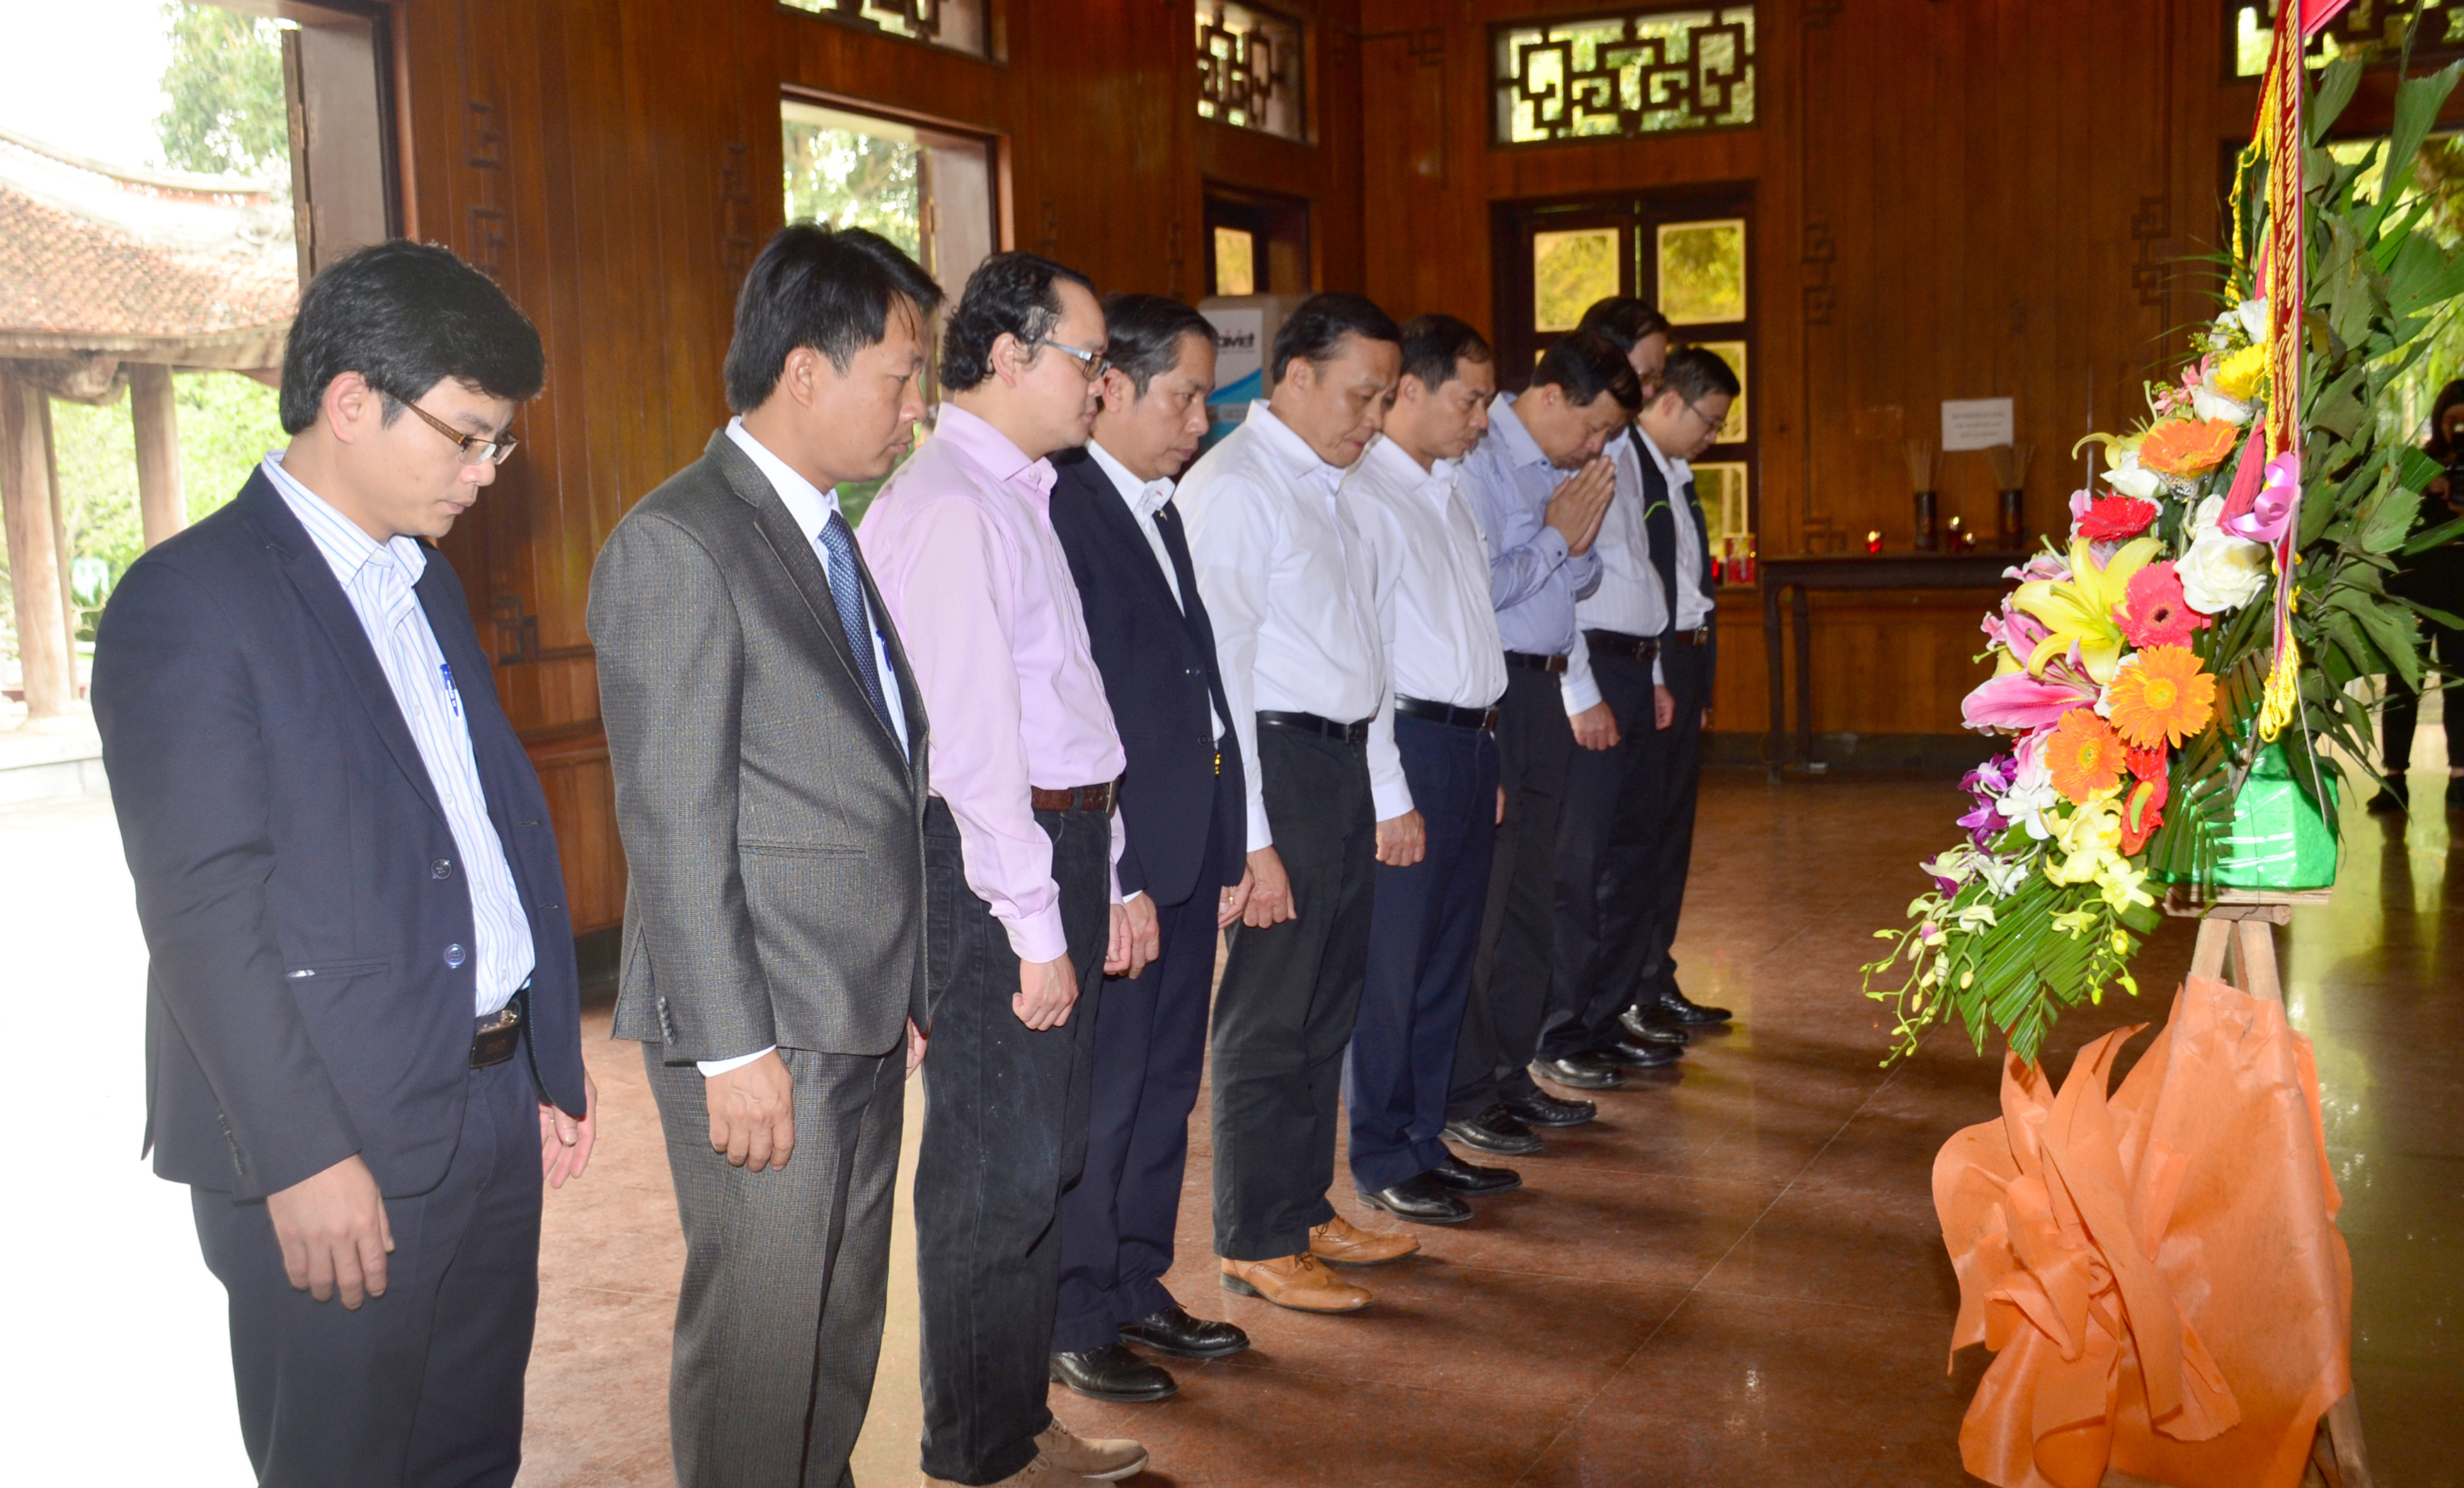 Đoàn công tác Bộ Ngoại giao thành kính tưởng niệm Chủ tịch Hồ Chí Minh. Ảnh: Thành Duy